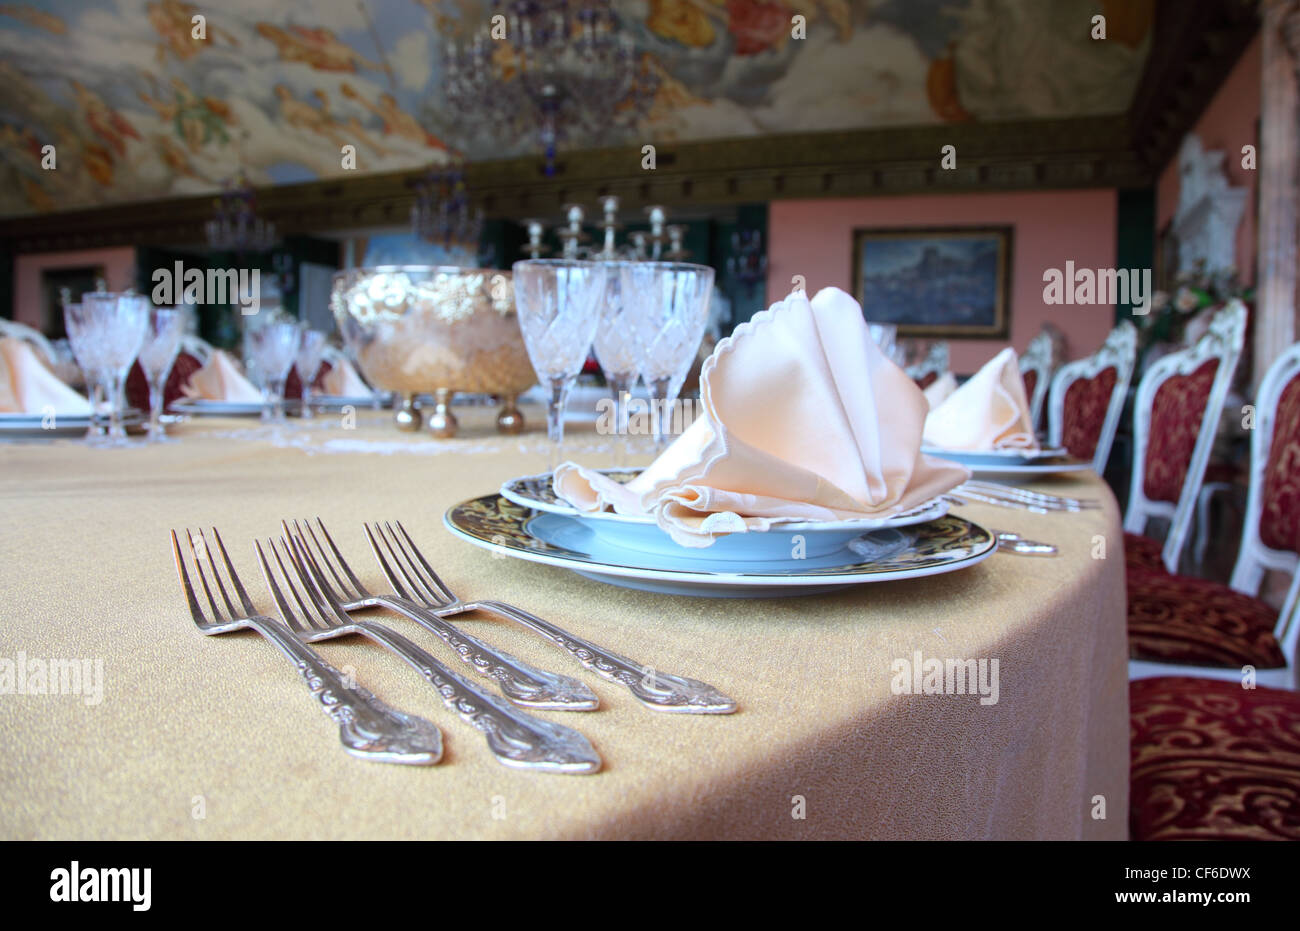 Quattro forche e due piastre con placemat presso l'orlo del tavolo per la cena in ristorante Foto Stock